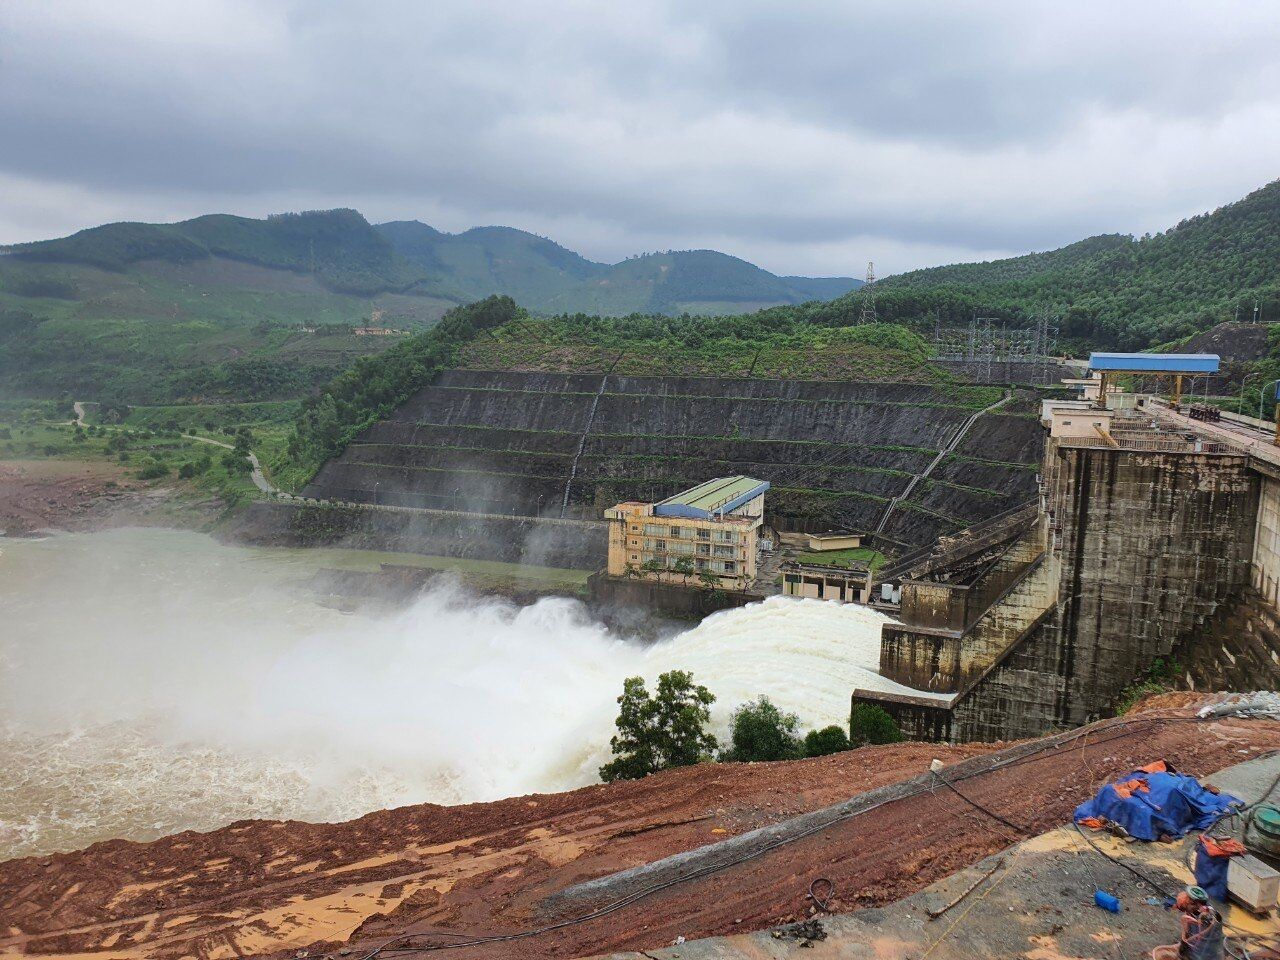 Thủy điện Hương Điền đang điều tiết nước qua tràn và tuabin với lưu lượng tăng dần, tránh đột biến khoảng từ 200 đến 400m3/s (ưu tiên phát điện tối đa qua tuabin); điều chỉnh vận hành tùy theo tình hình lưu lượng nước thực tế đến hồ